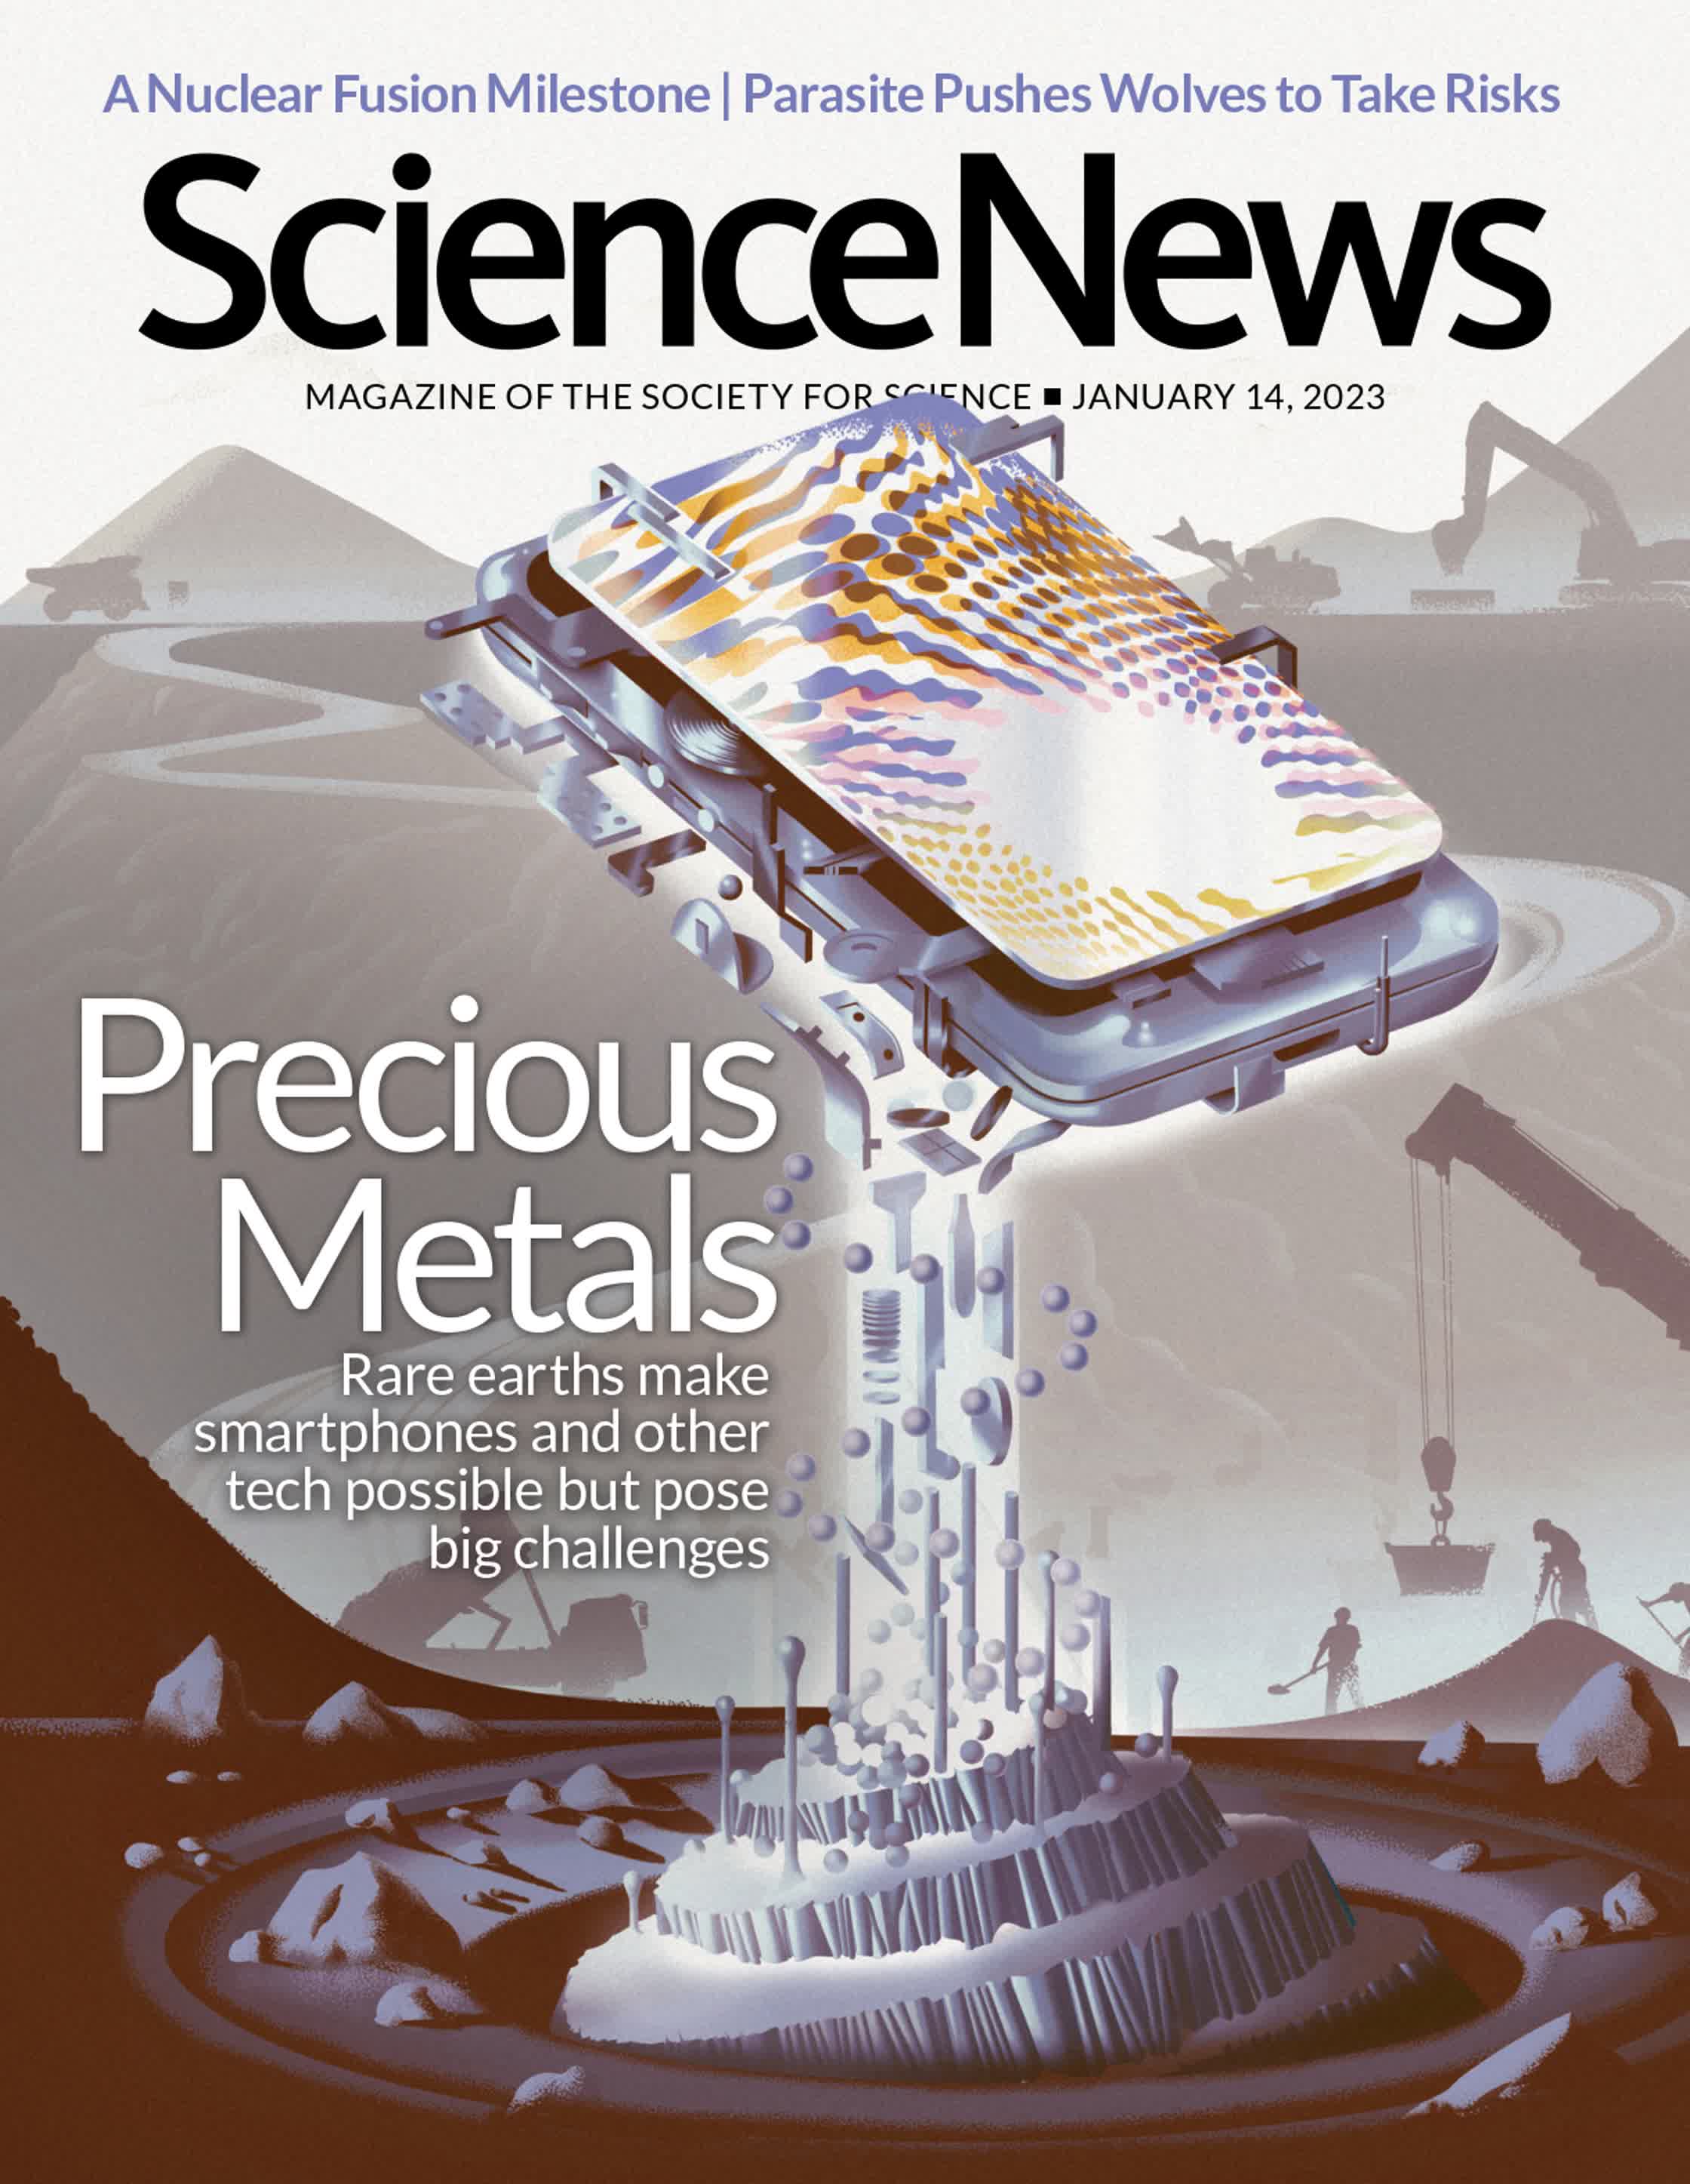 SCIENCE NEWS_COVER_PRECIOUS METALS copy.jpg